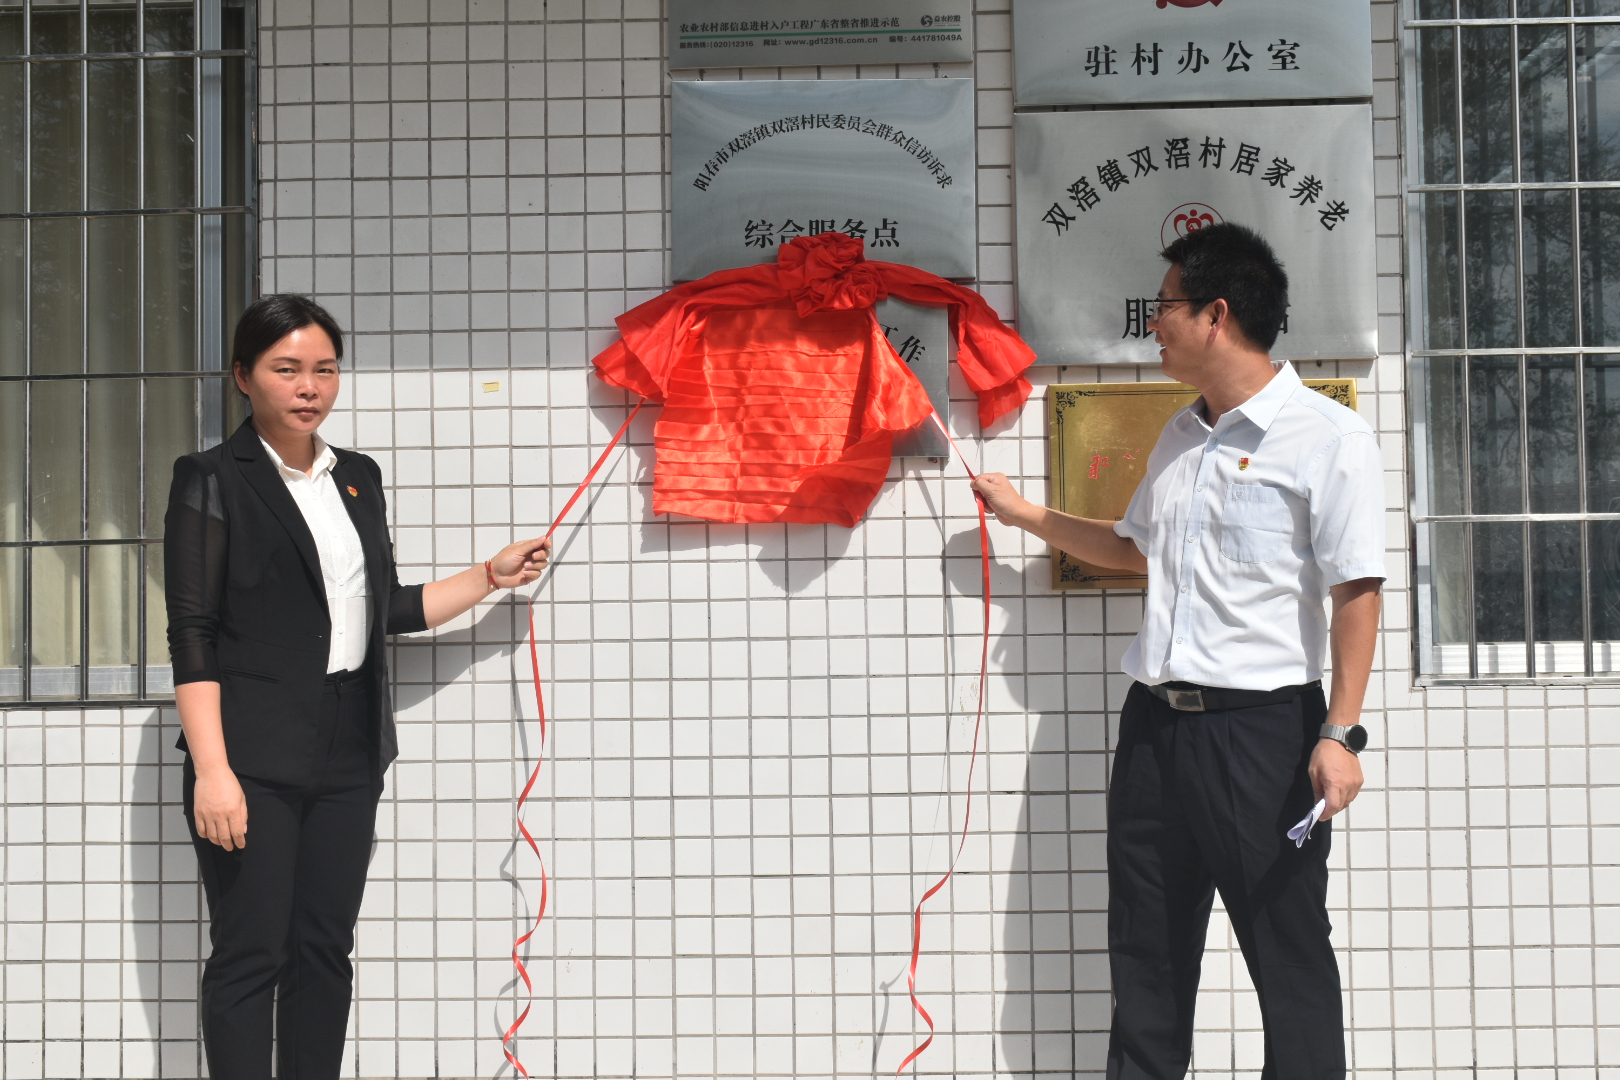 双滘镇社会工作服务站正式成立揭牌